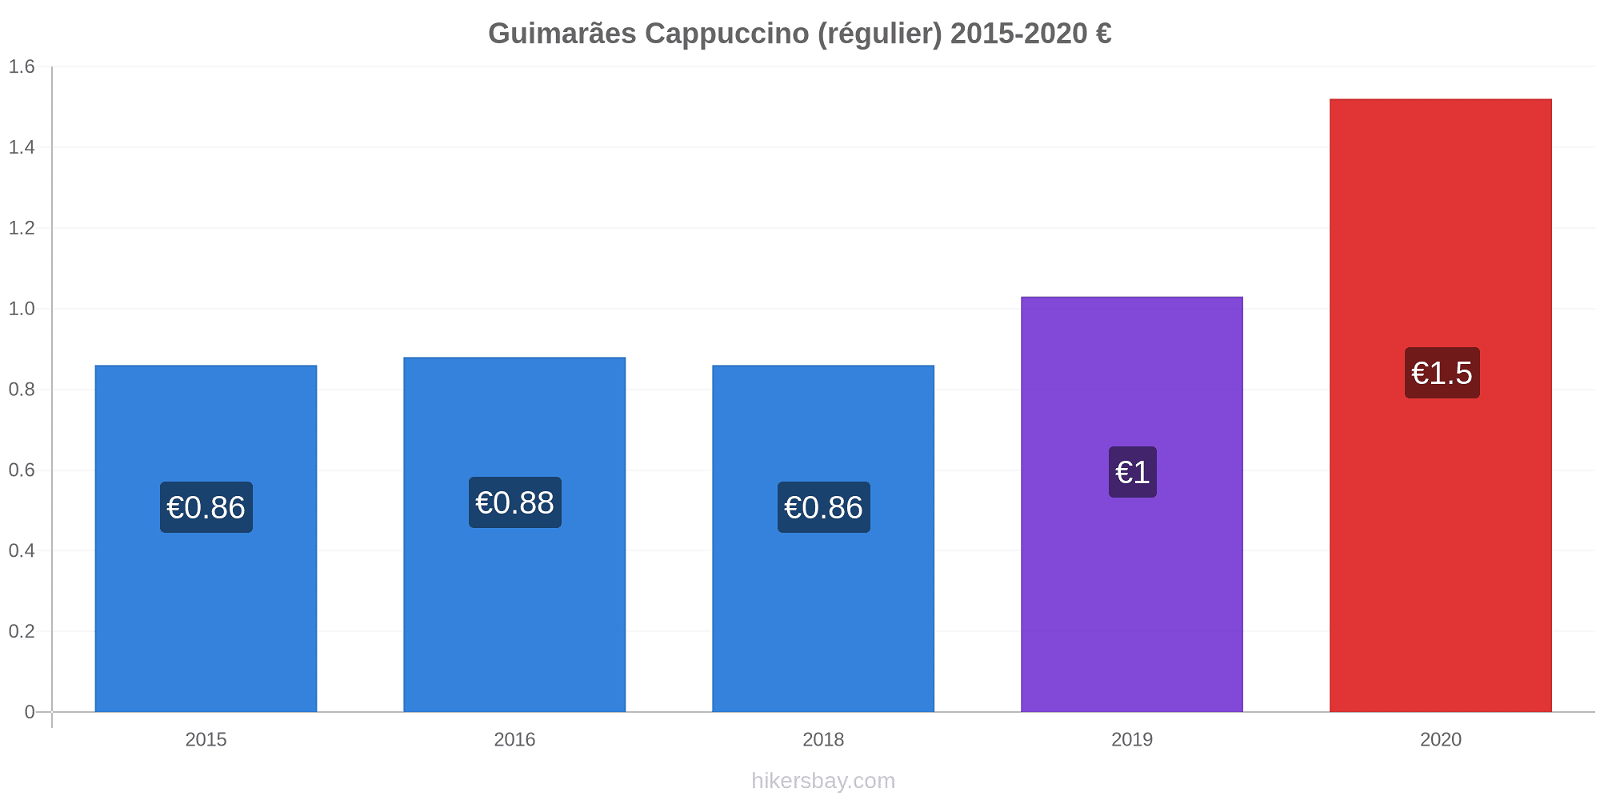 Guimarães changements de prix Cappuccino (régulier) hikersbay.com